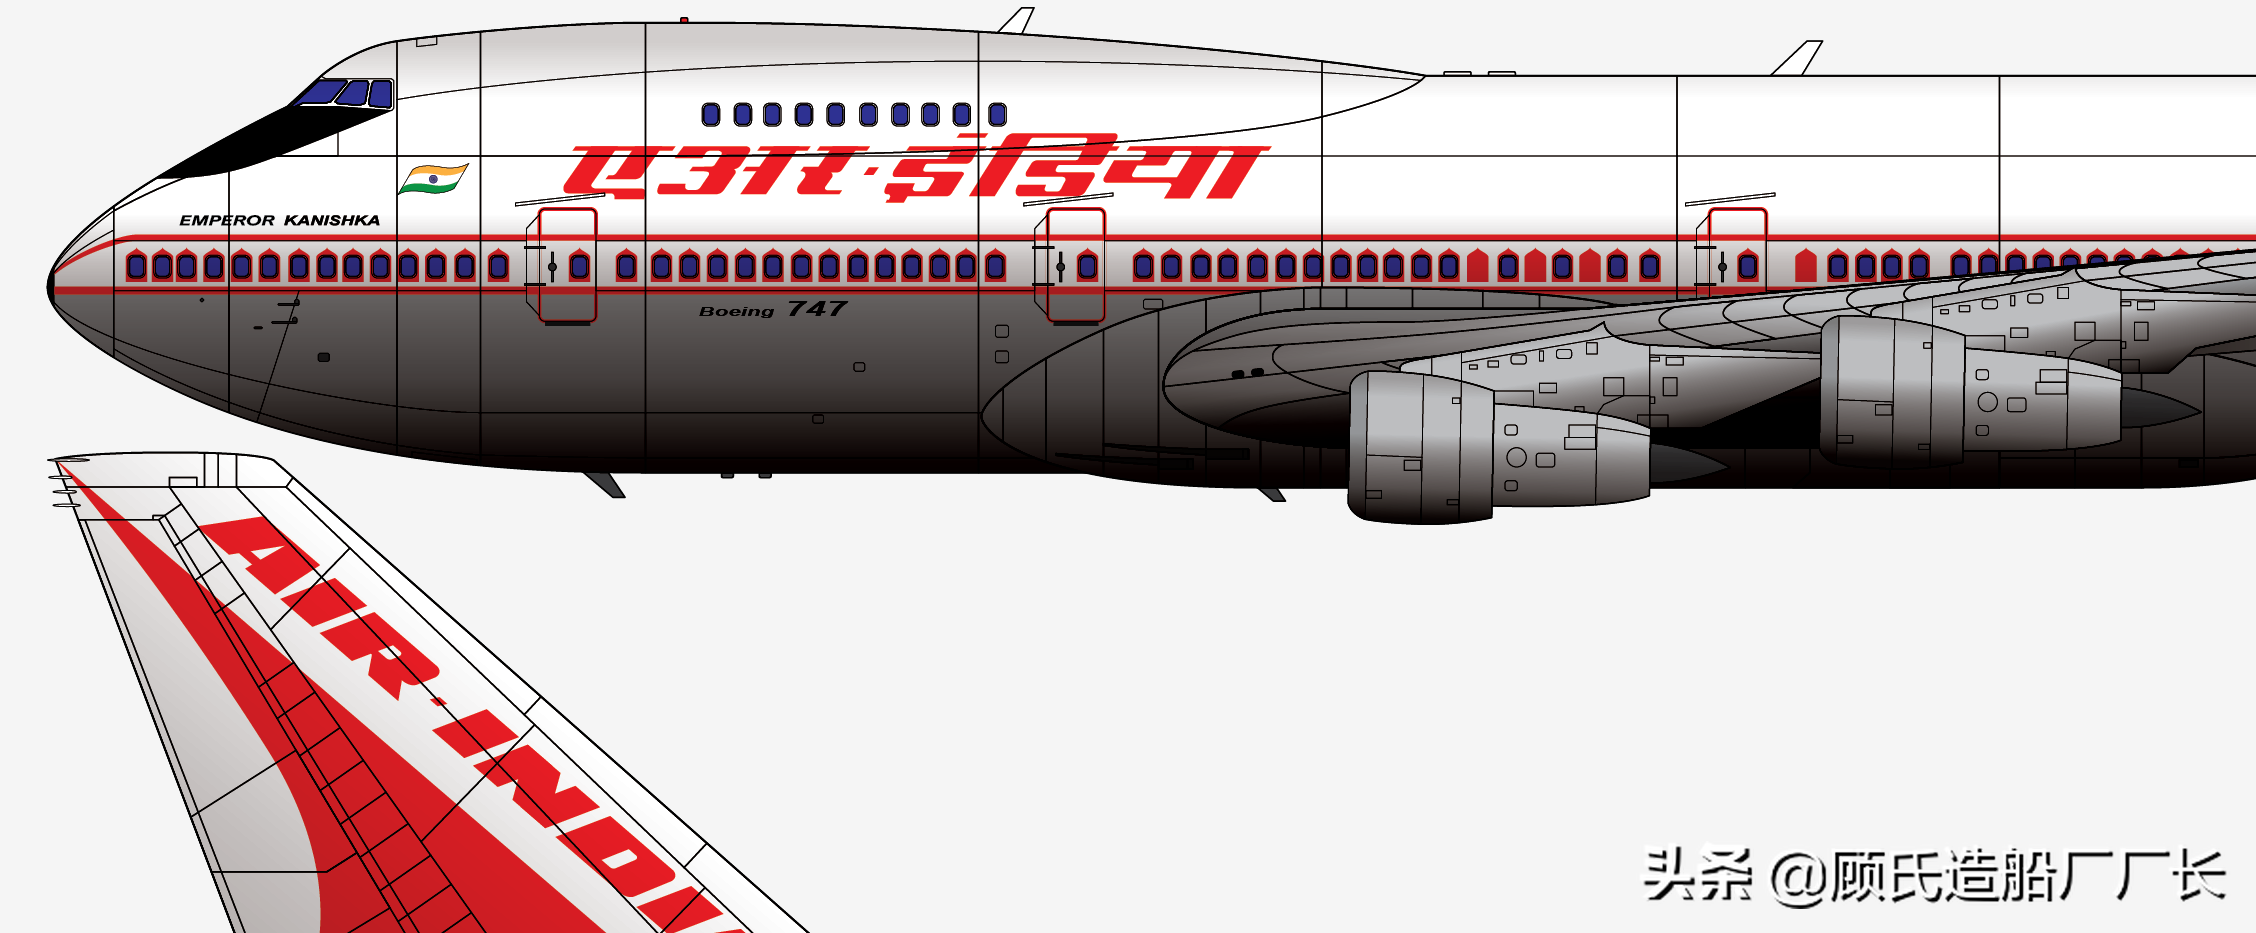 突然驾崩的卡雅沙加皇回顾了印度航空182次航班1985.6.23爱尔兰航空难